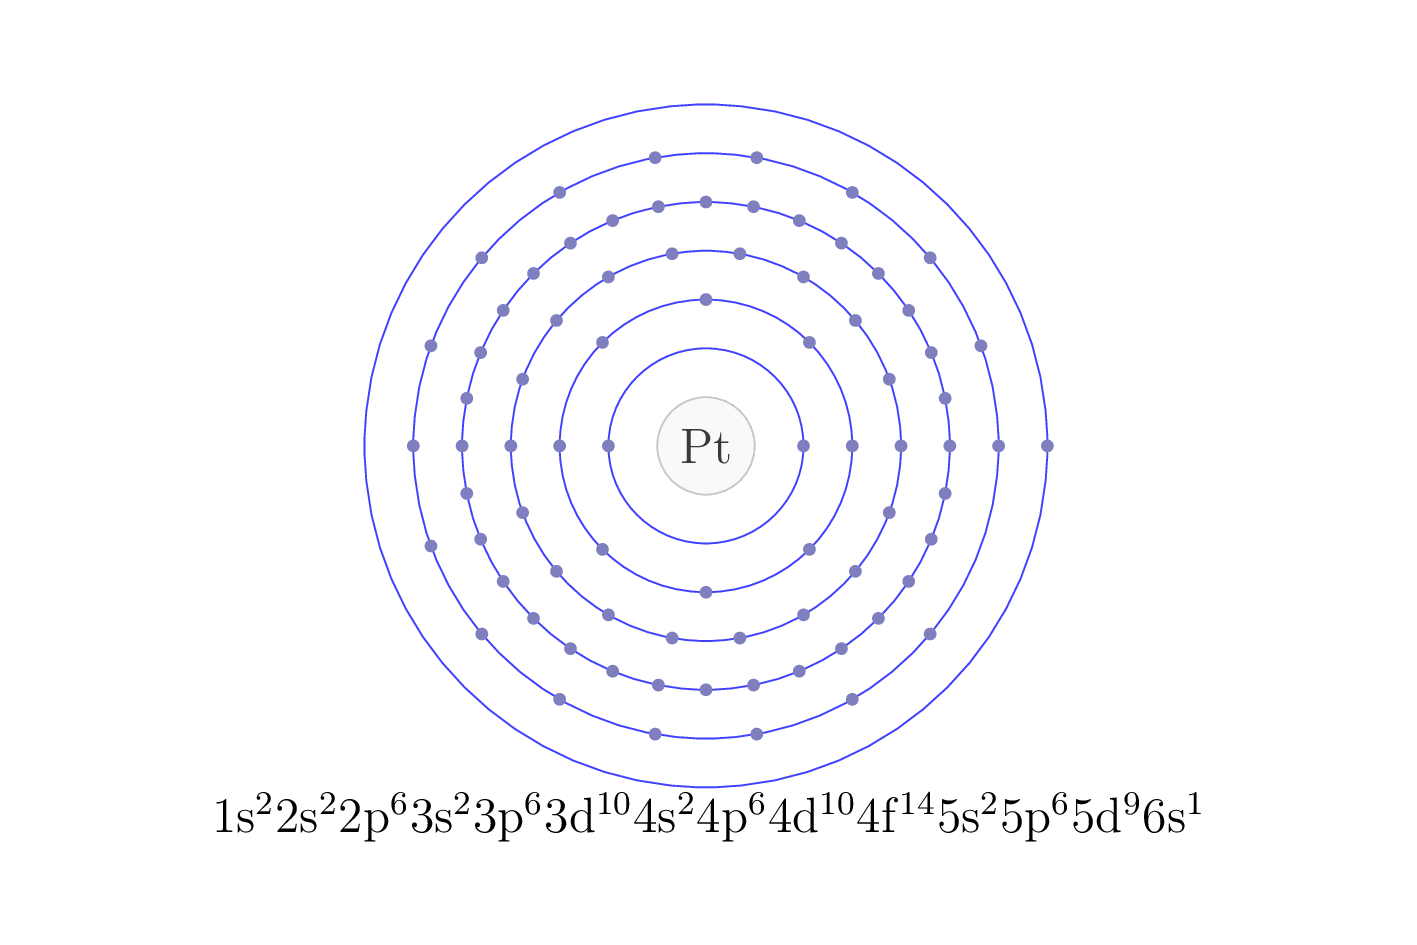 electron configuration of element Pt